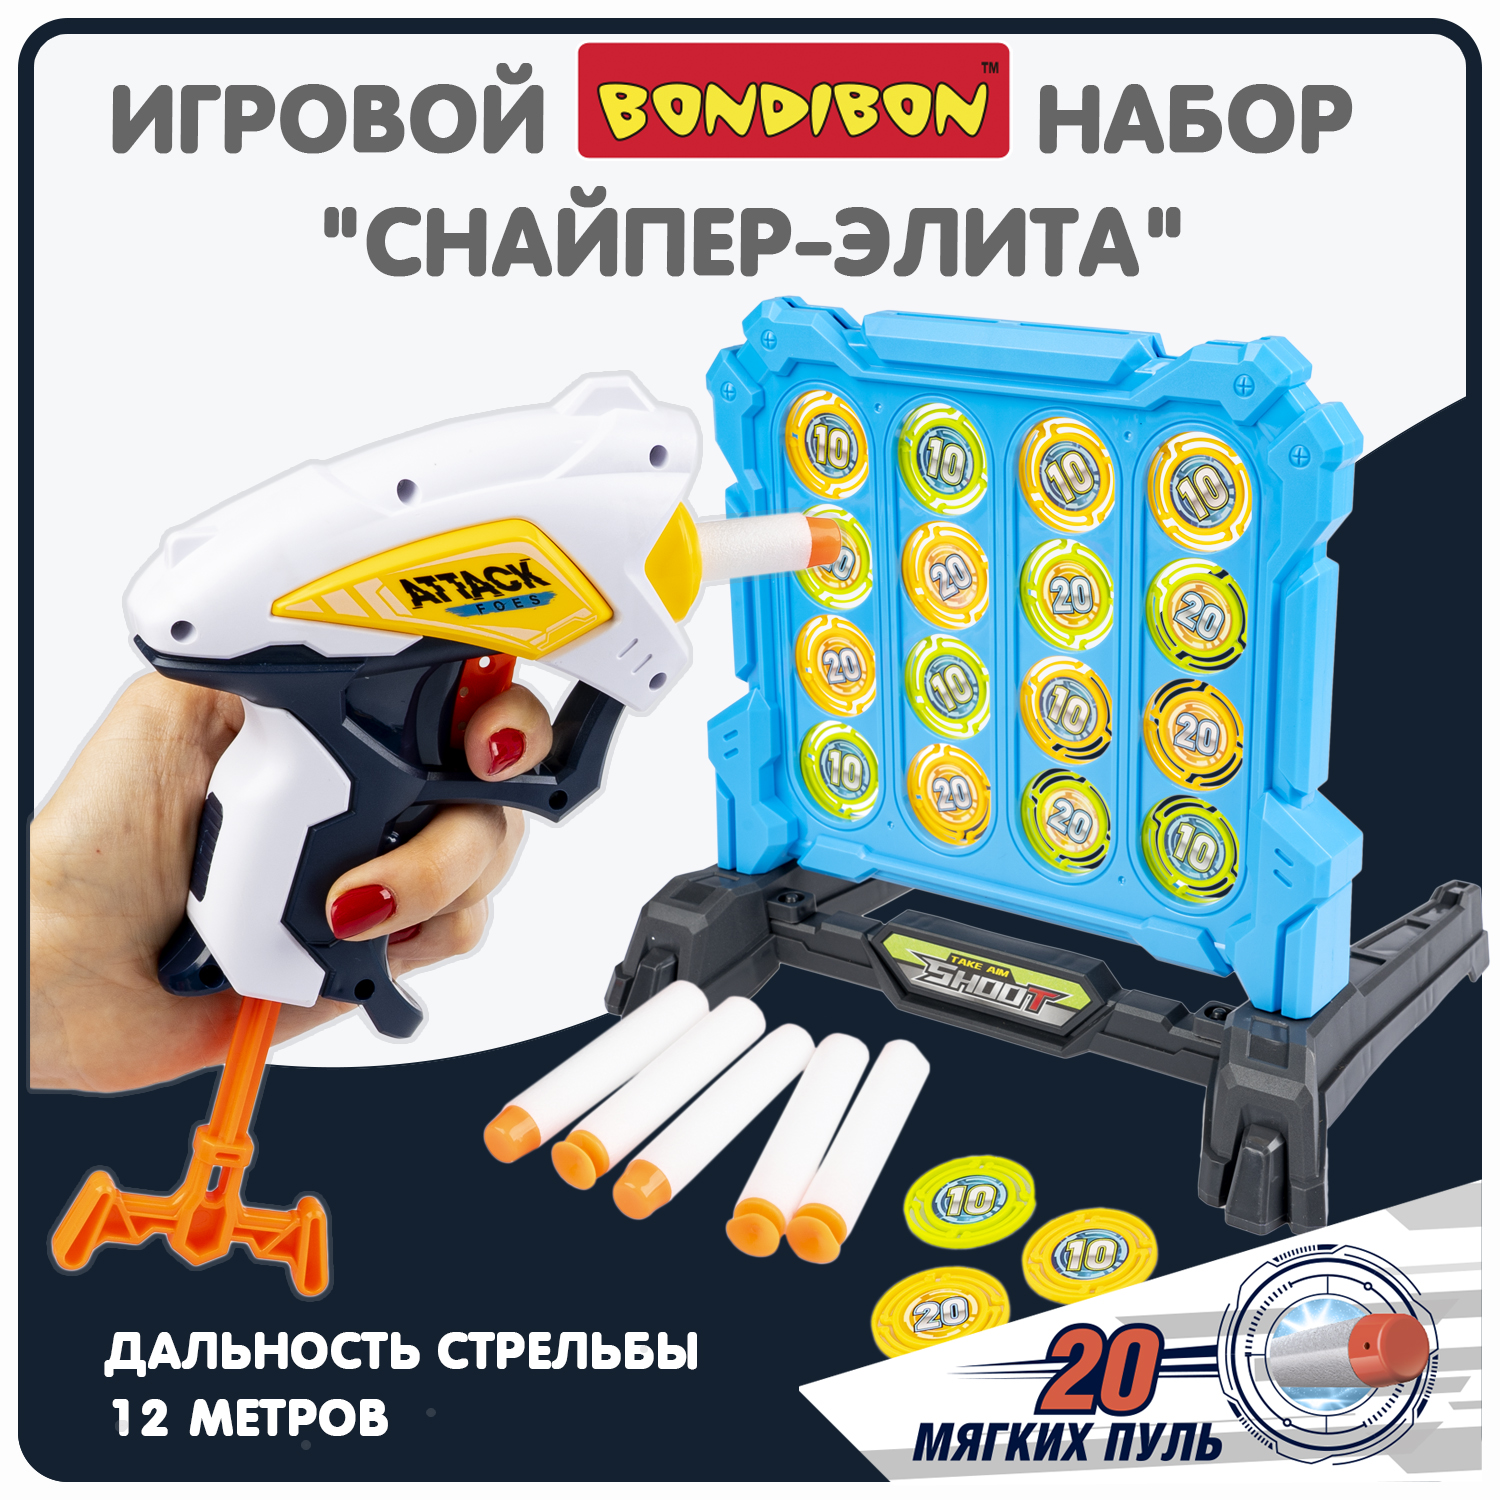 Набор игровой Bondibon CНАЙПЕР-элита пистолет, мишень, мягкие пули / ВВ6064(игрушка) игровой набор junfa 2 космобластера мишень и 12 мягких пуль wg 11267